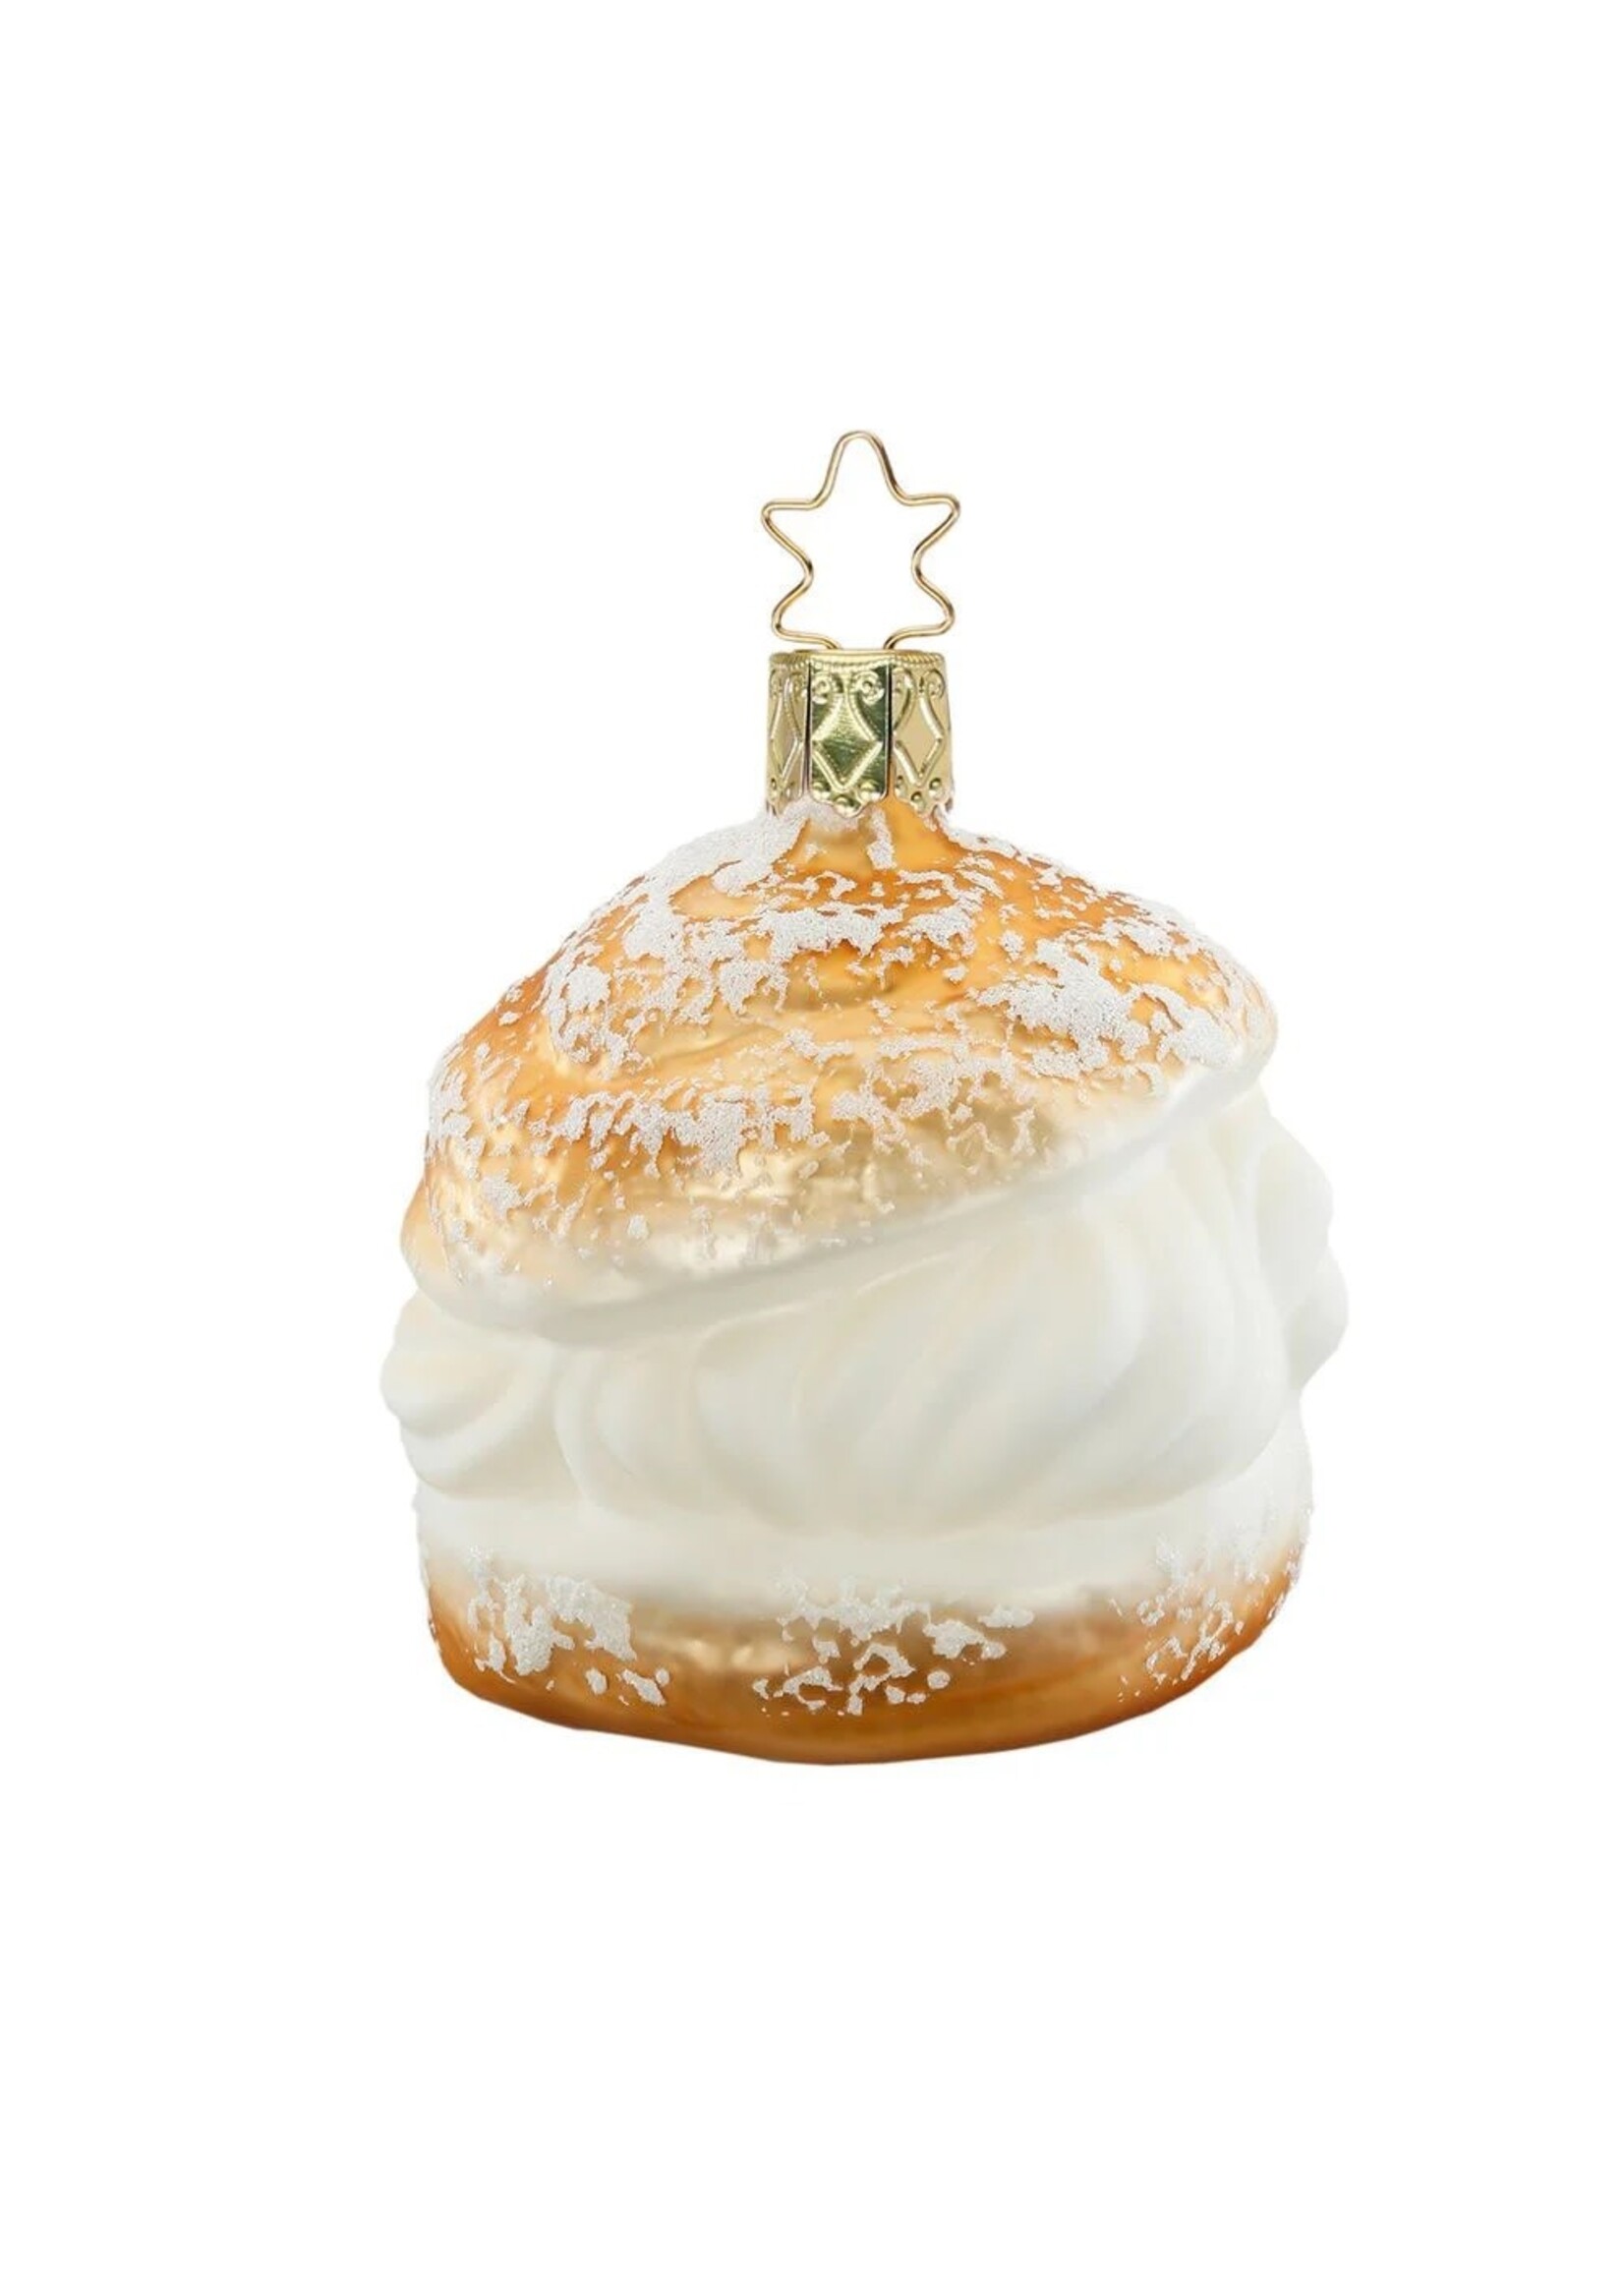 Ornament - Cream Puff 3”